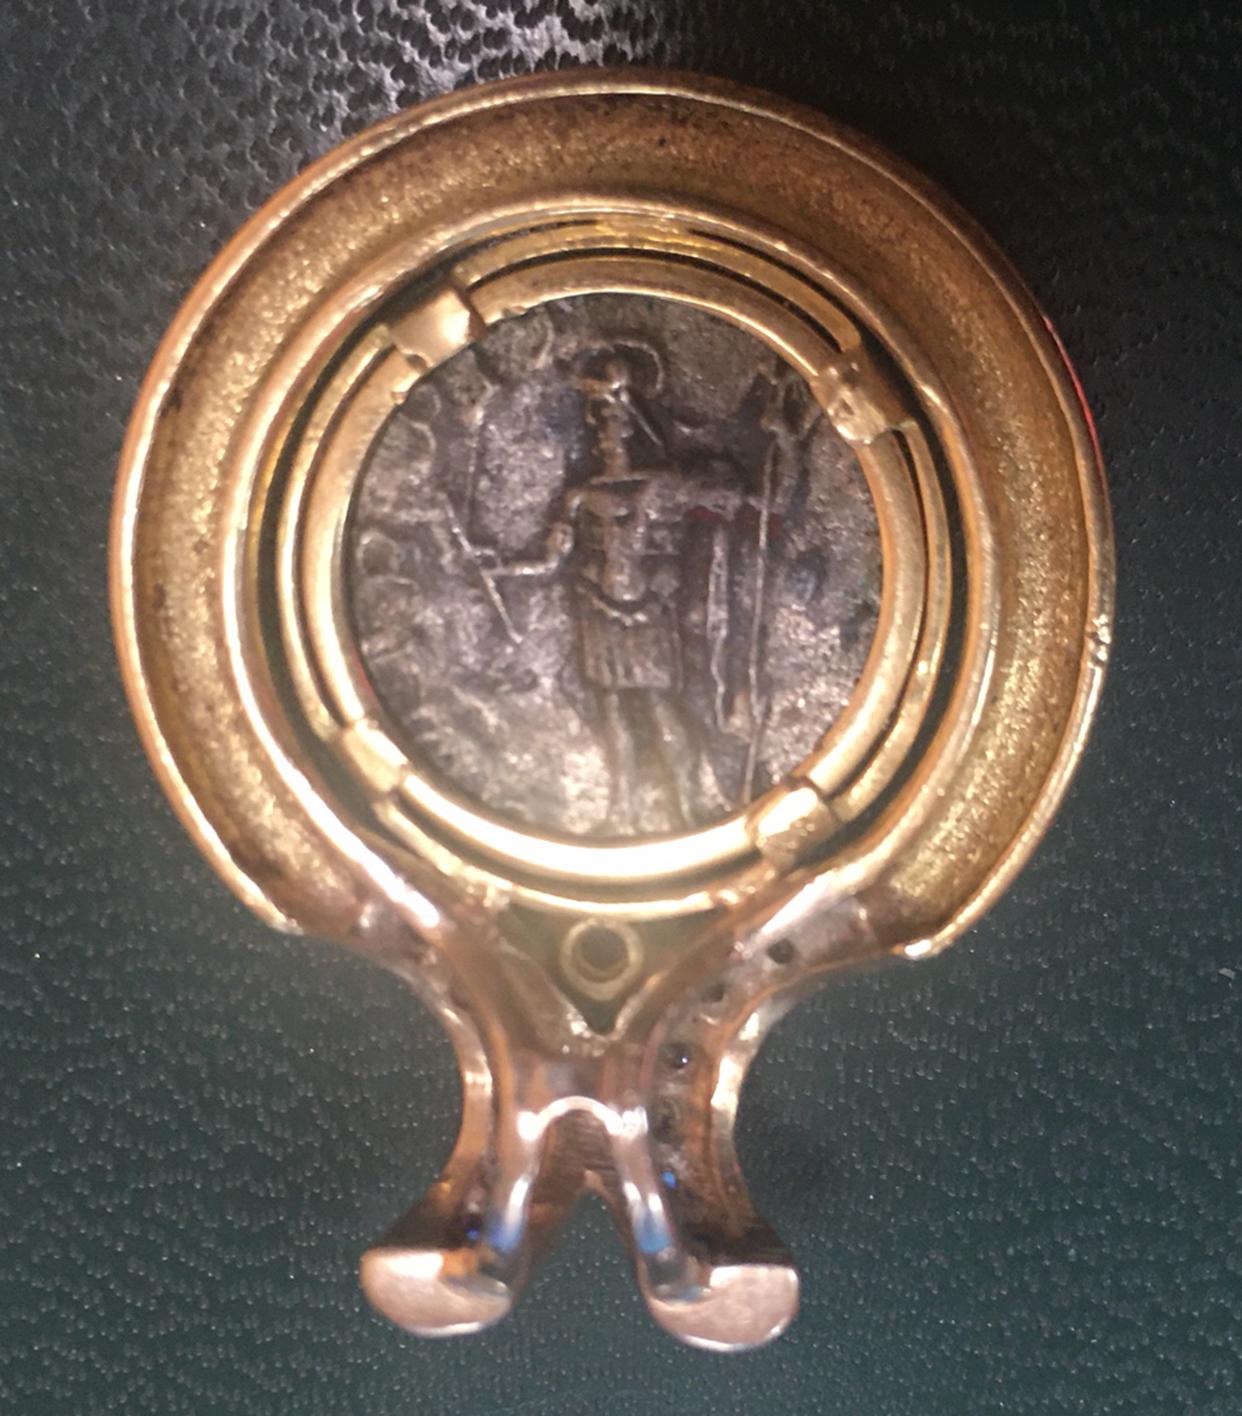 Pendentif en or orné d'une ancienne pièce de monnaie romaine représentant le visage d'un empereur romain, maintenu dans un cadre biseauté en or jaune 18 carats massif fabriqué à la main. Le capuchon du pendentif est orné de deux rangées de 12